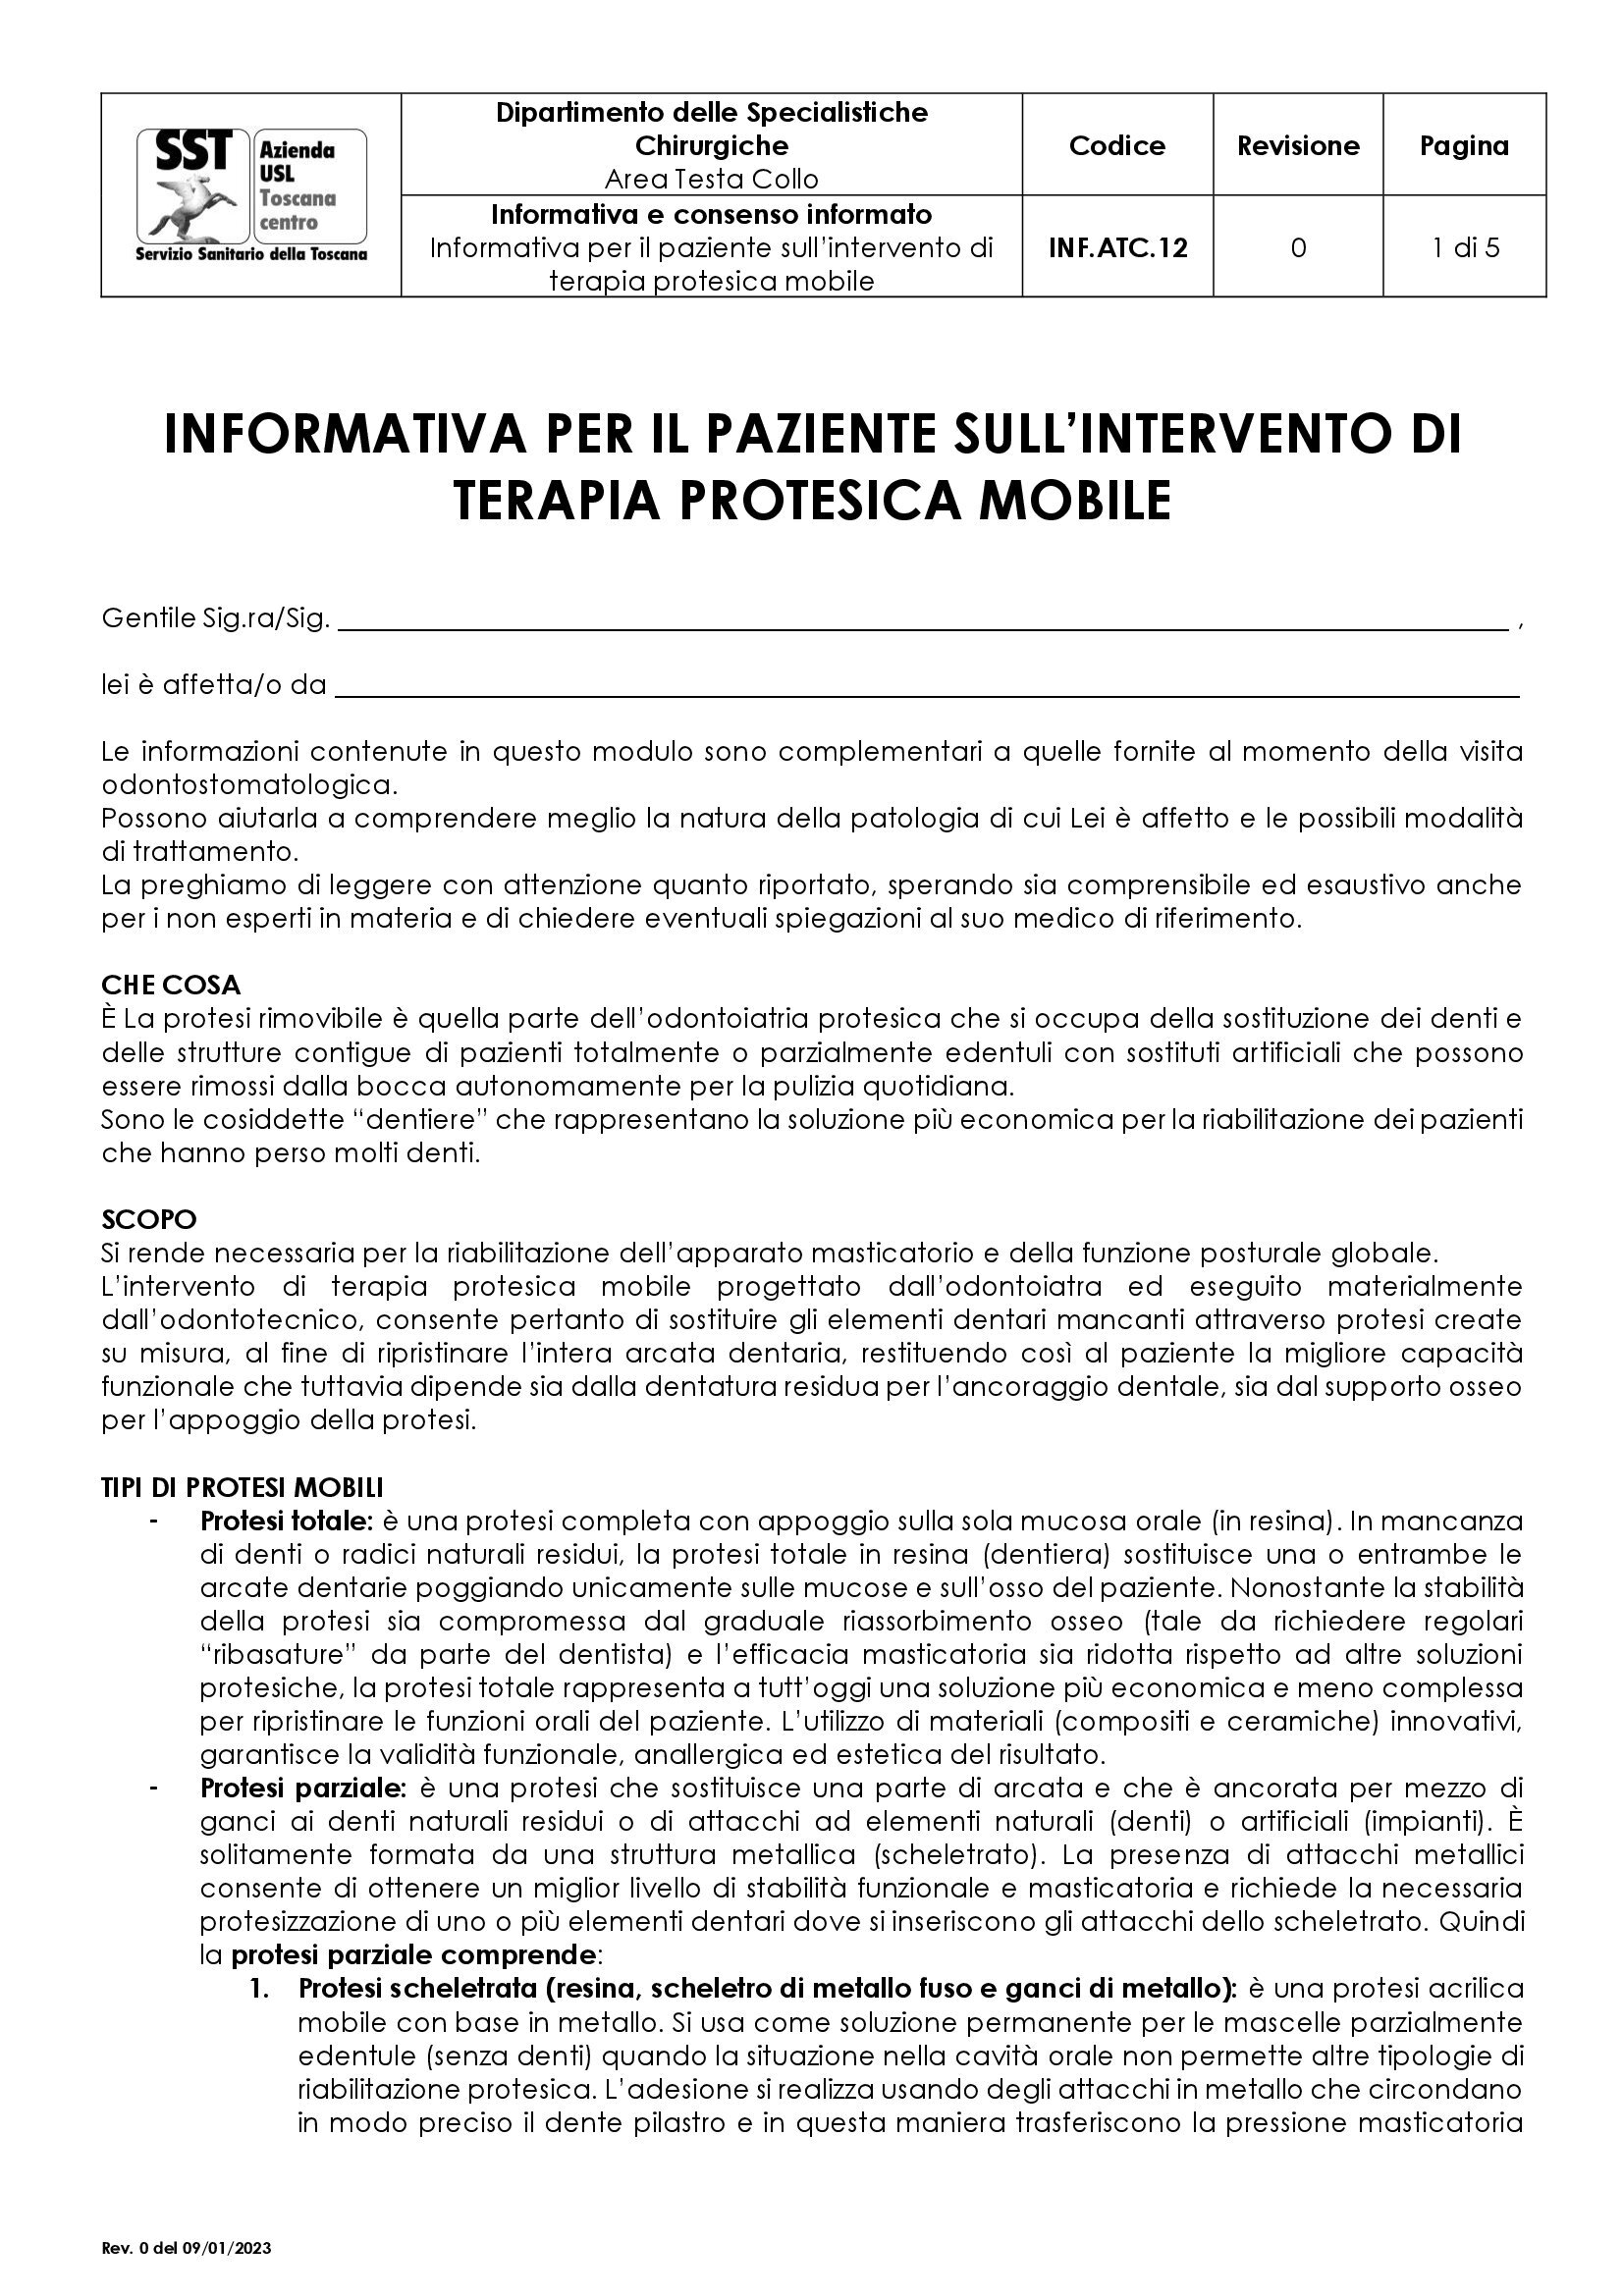 INF.ATC.12 Informativa per il paziente sull’intervento di terapia protesica mobile